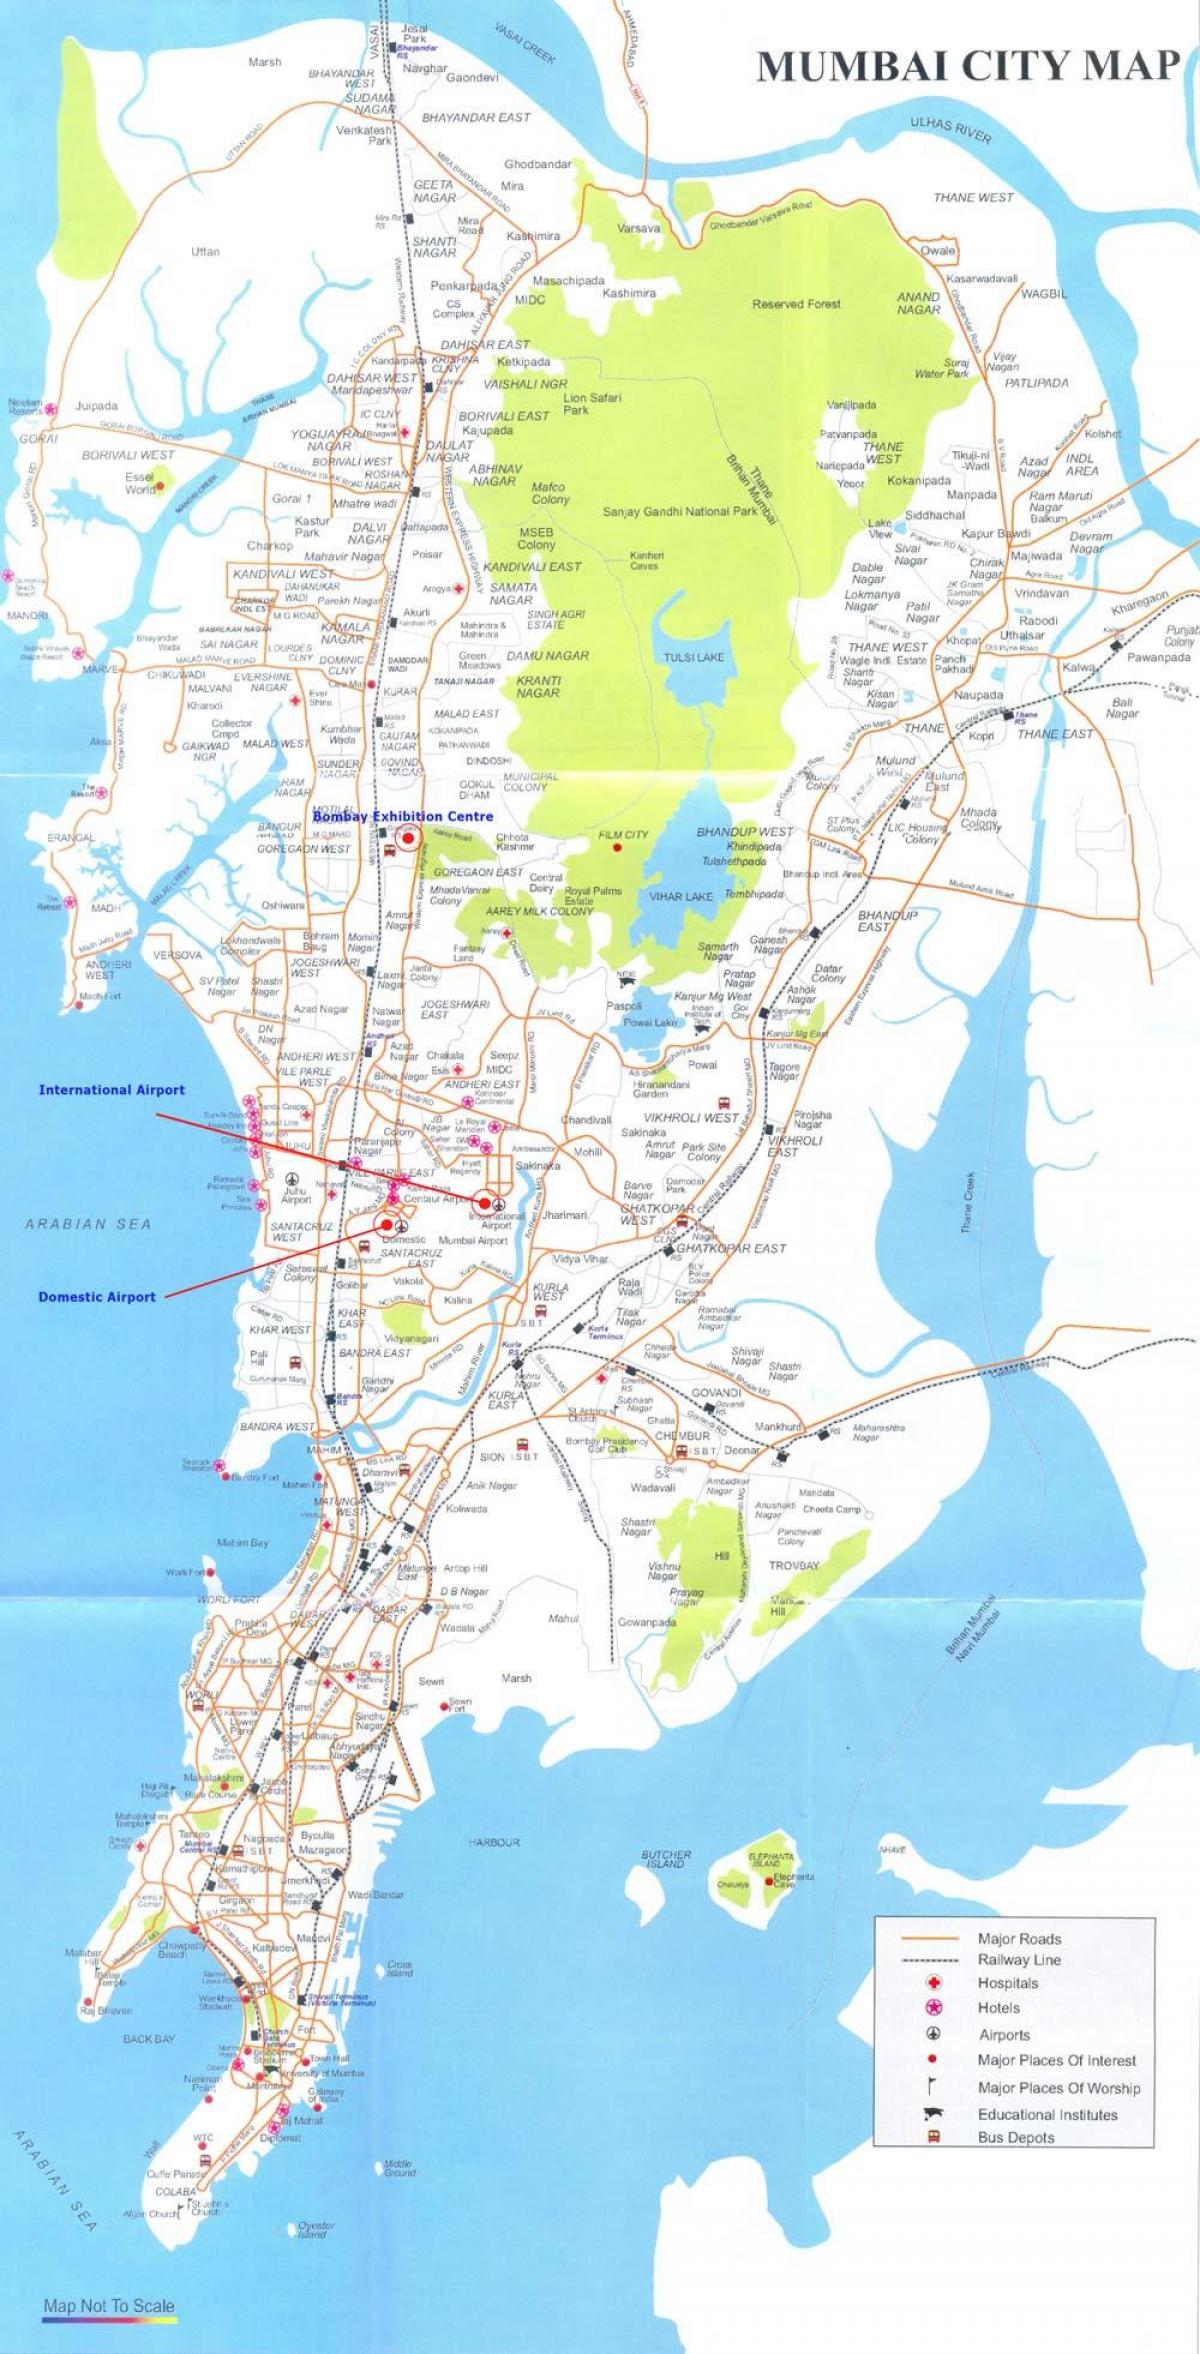 kort over Mumbai thane